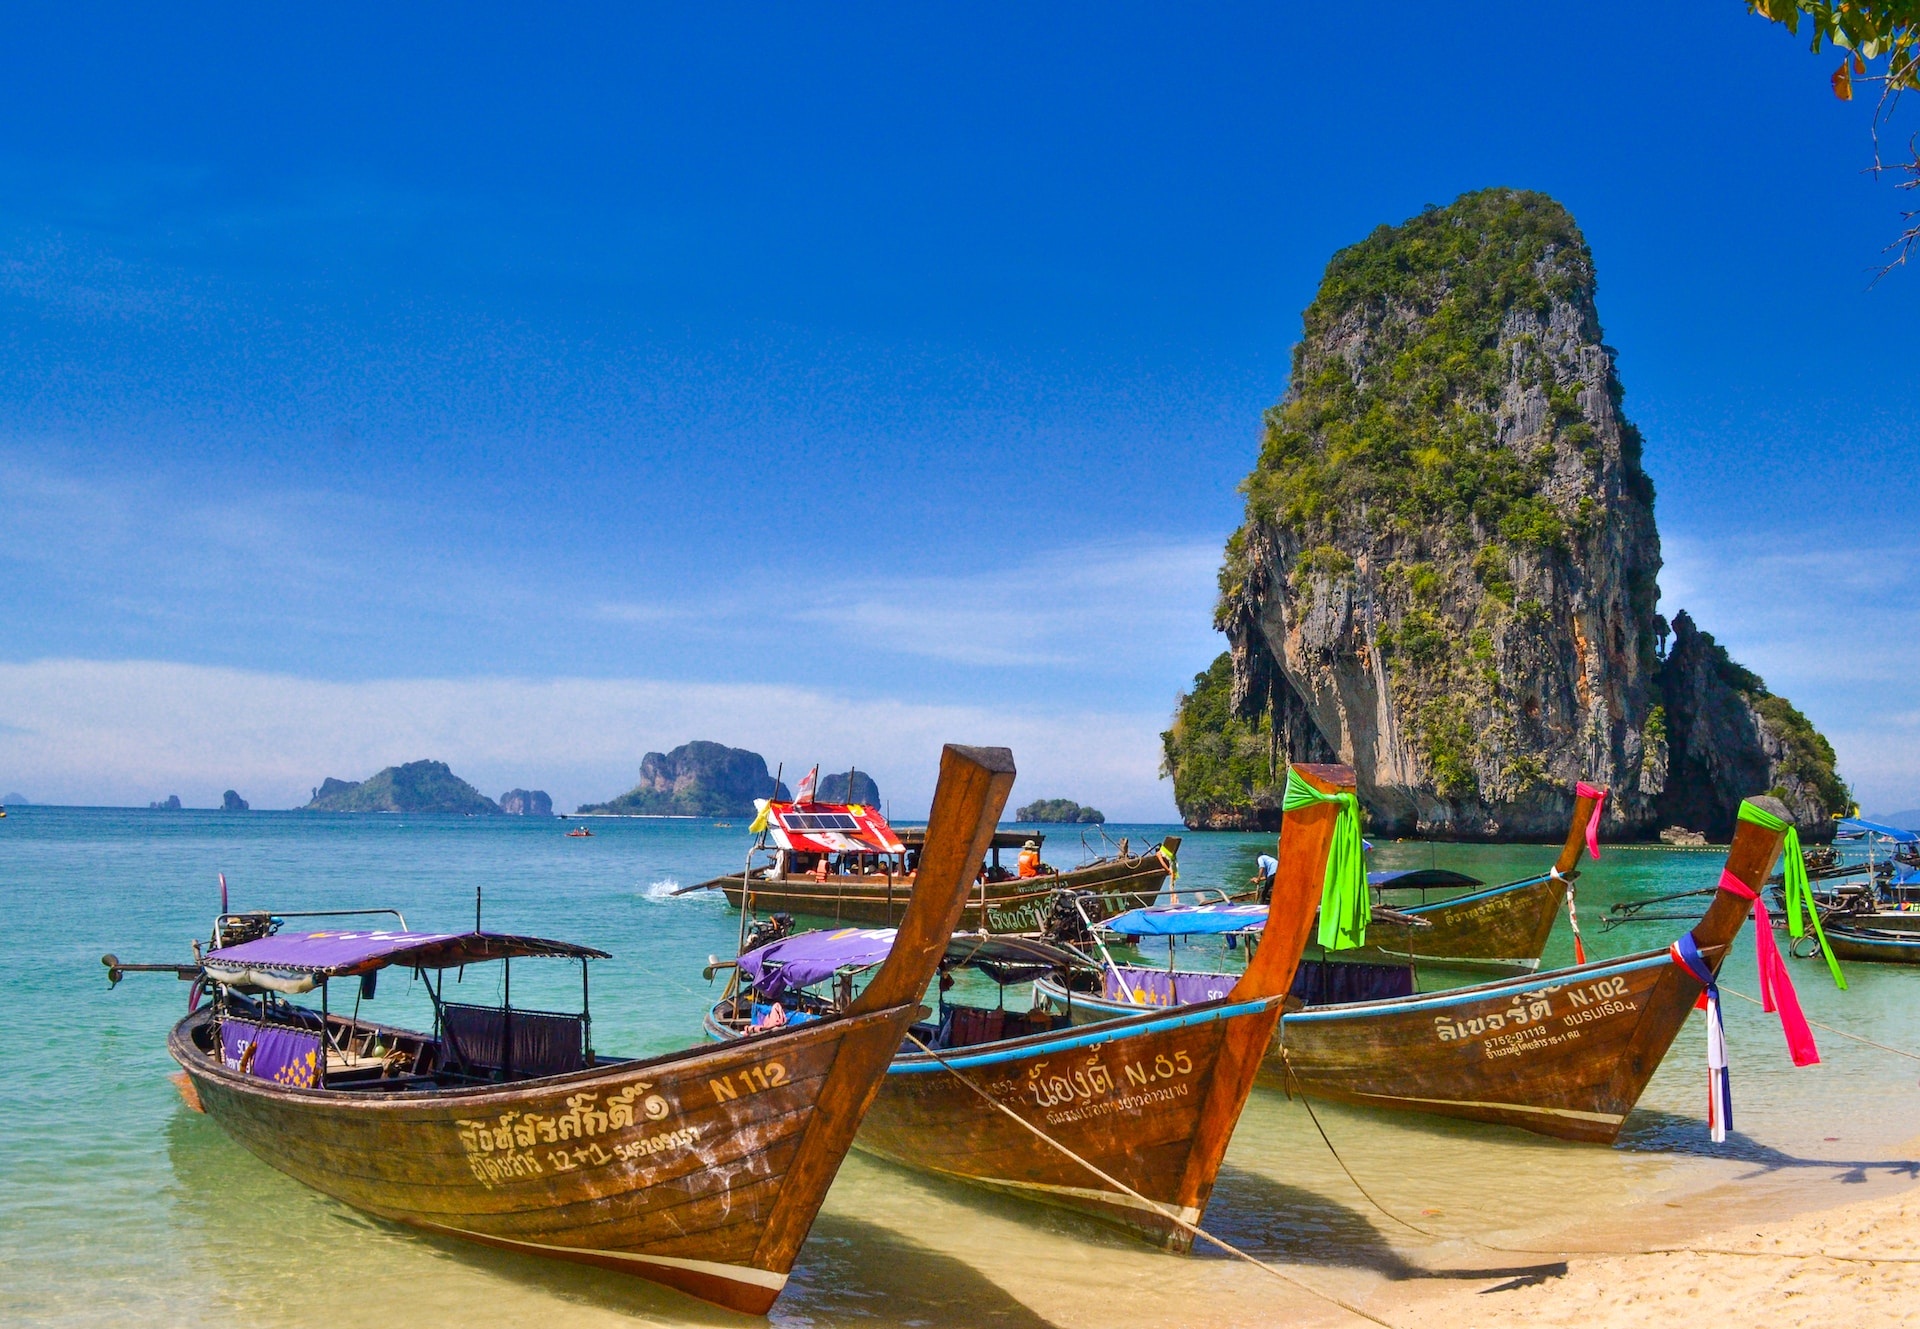 Giá tăng, khách Việt vẫn đổ xô đi Thái dịp hè - ảnh 3